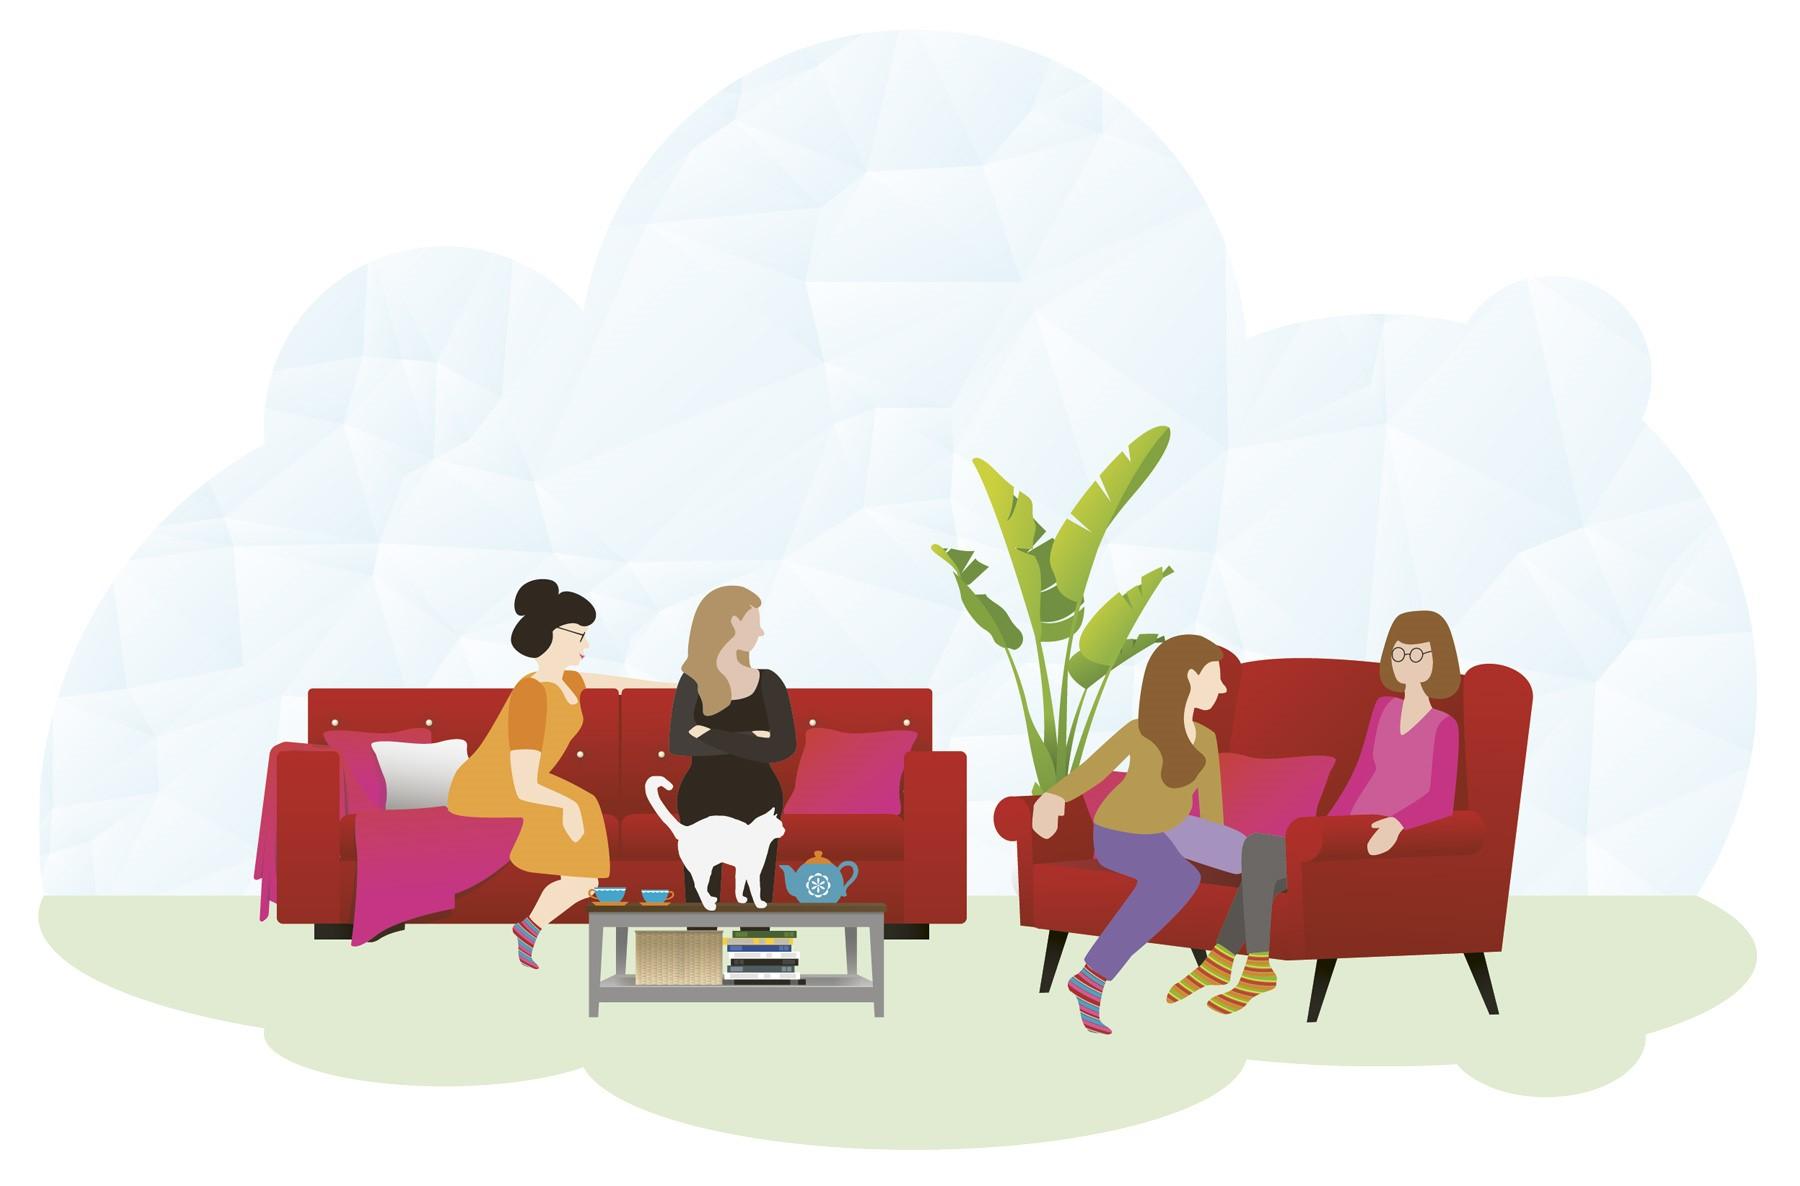 neljä naista istuu sohvilla keskustelemassa piirretyssä kuvituskuvassa